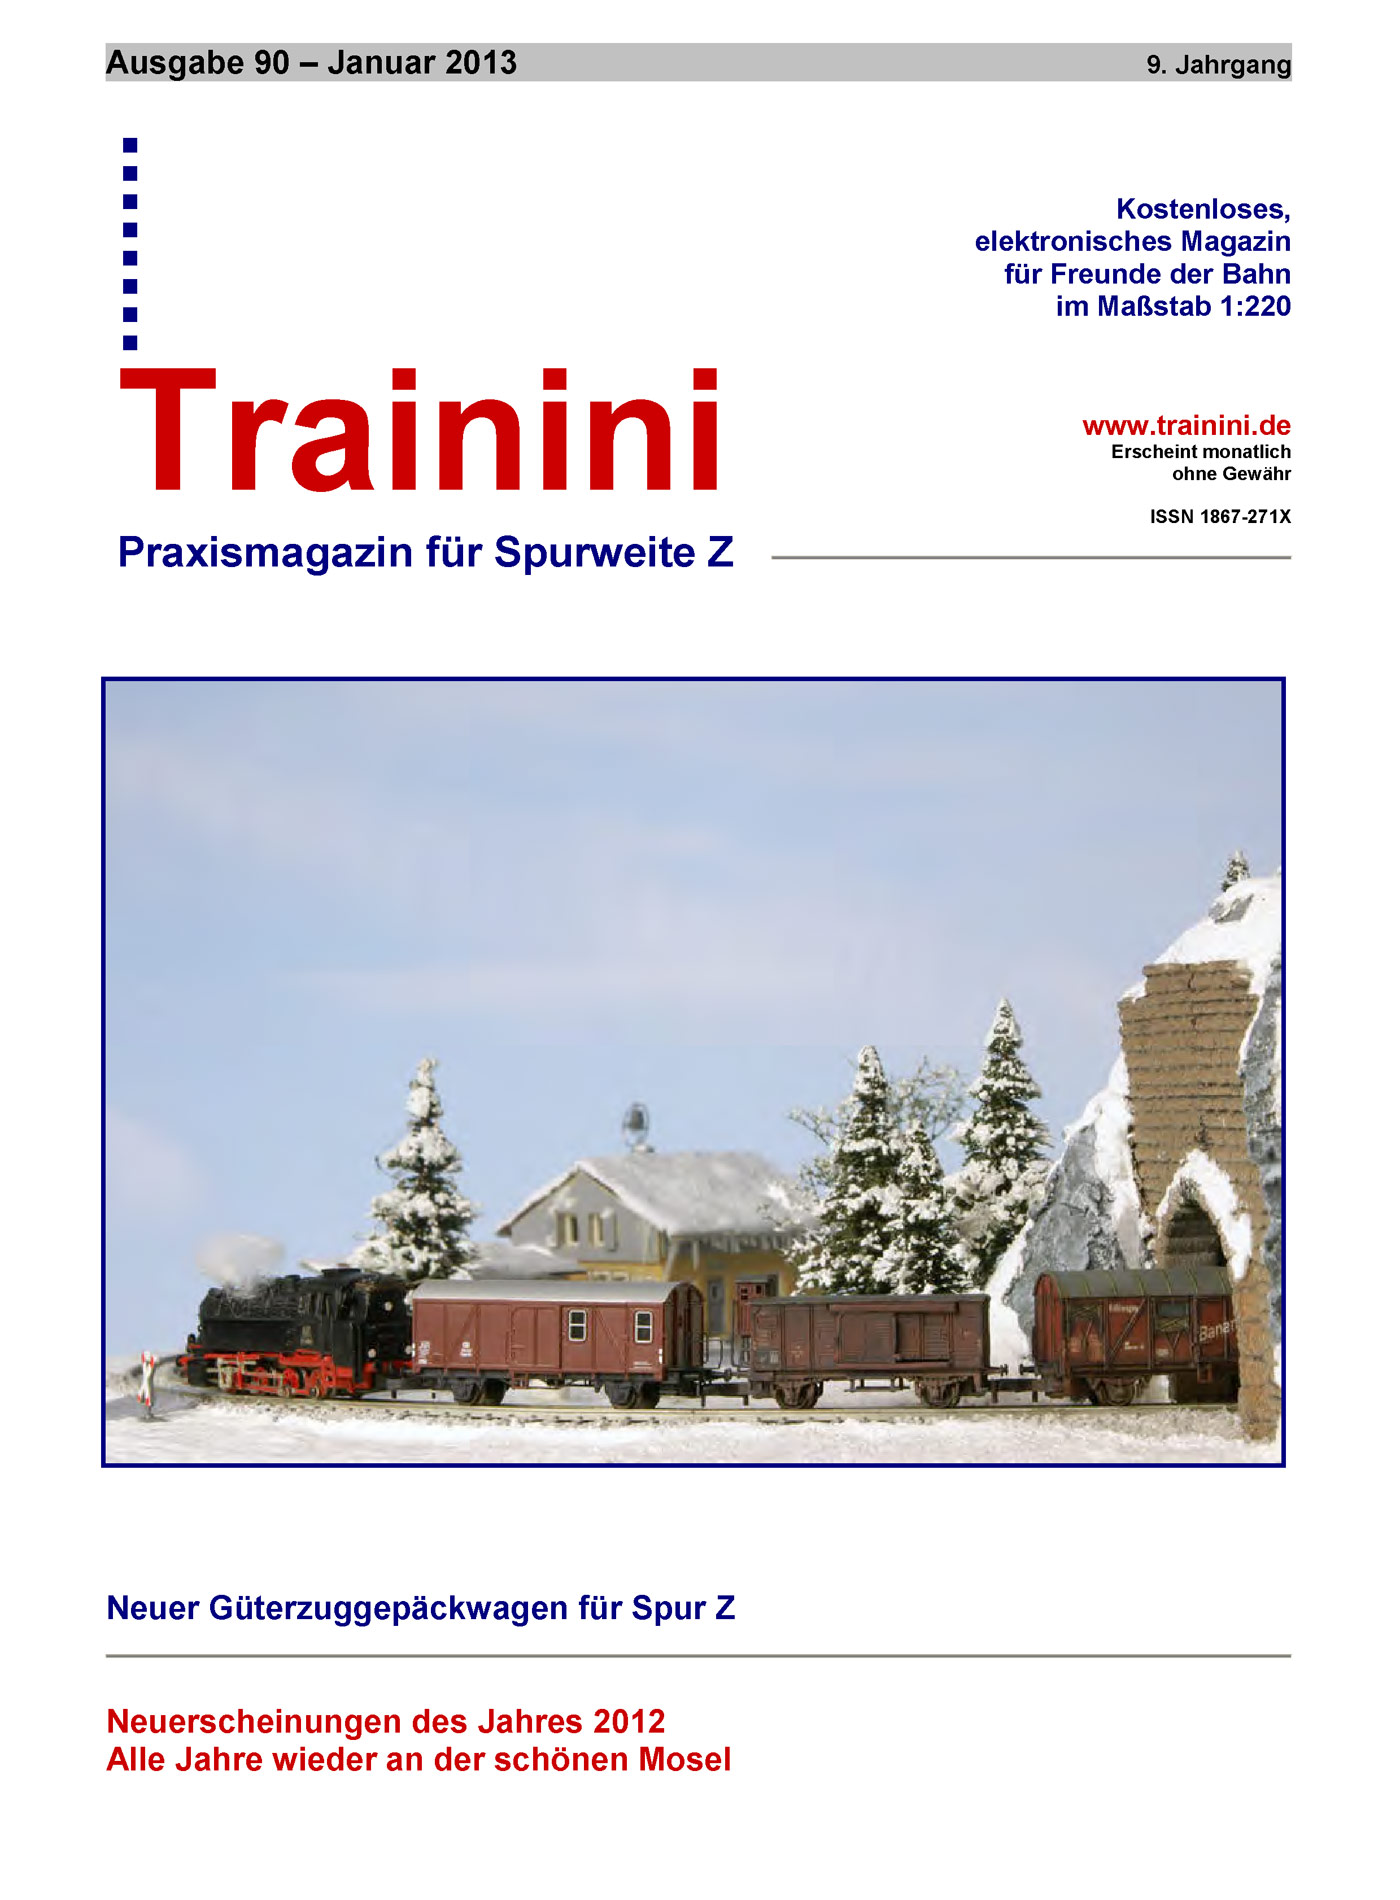 Trainini Ausgabe Januar 2013